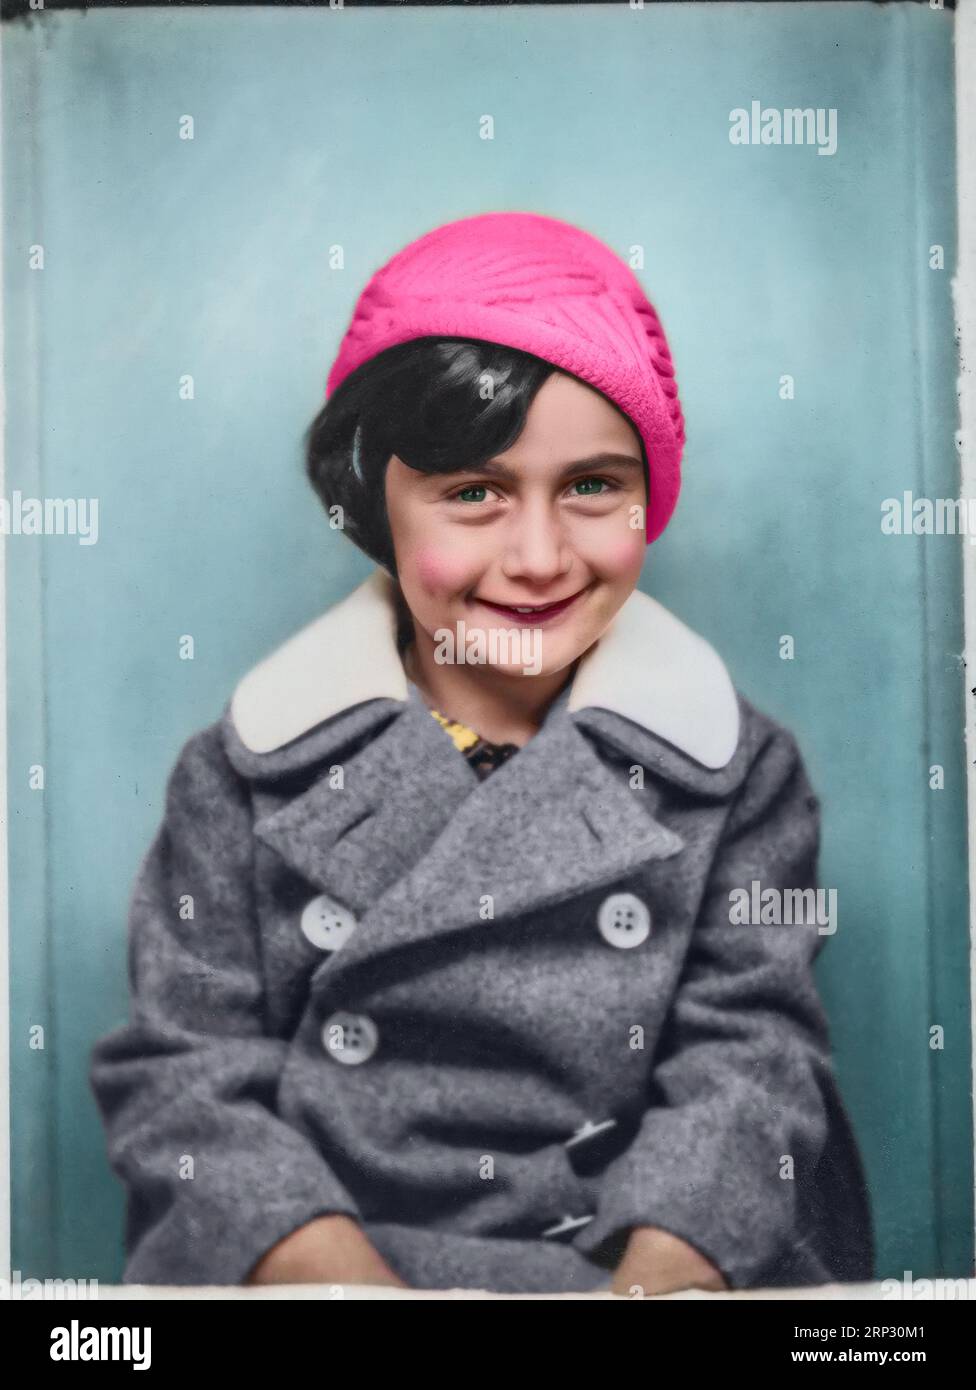 Anne Frank im Alter von fünf Jahren. Bad Aachen, Deutschland, 11. September 1934. Bitte beachten Sie, dass das Gesicht von Anne Frank digital verbessert wurde. Nicht alt Stockfoto